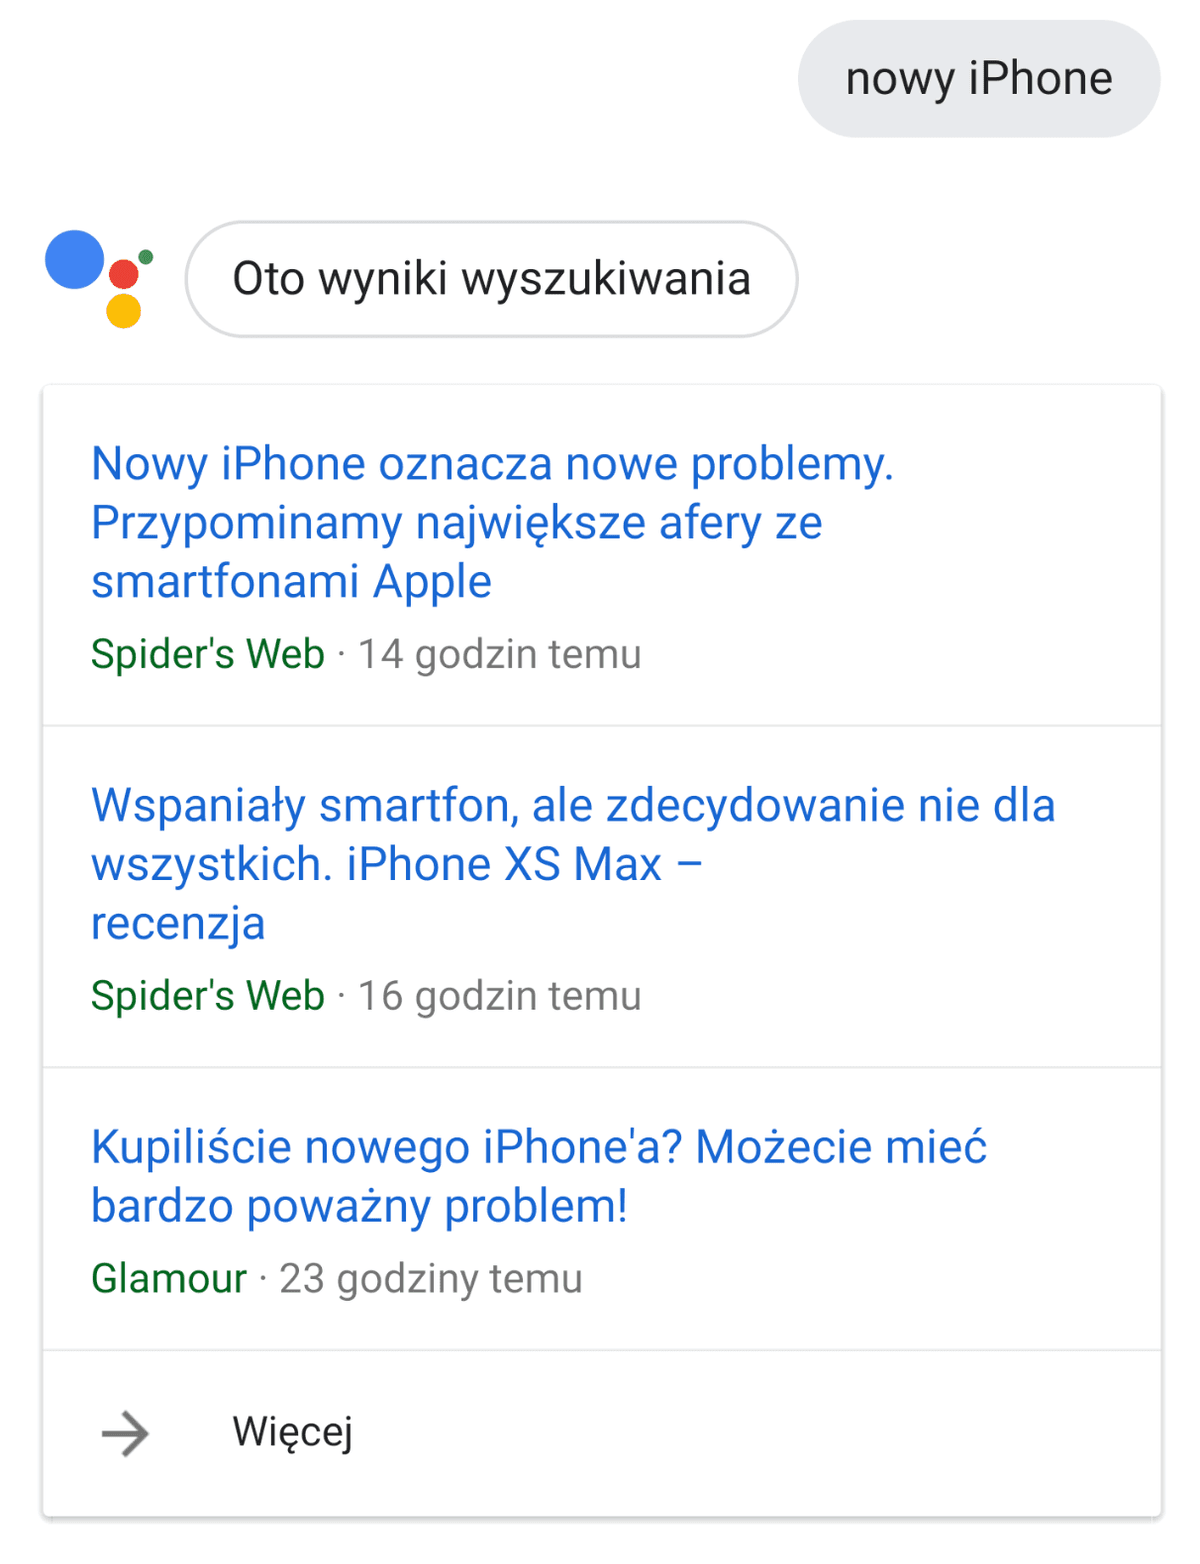 Jak działa Asystent Google w języku polskim? class="wp-image-813635" 